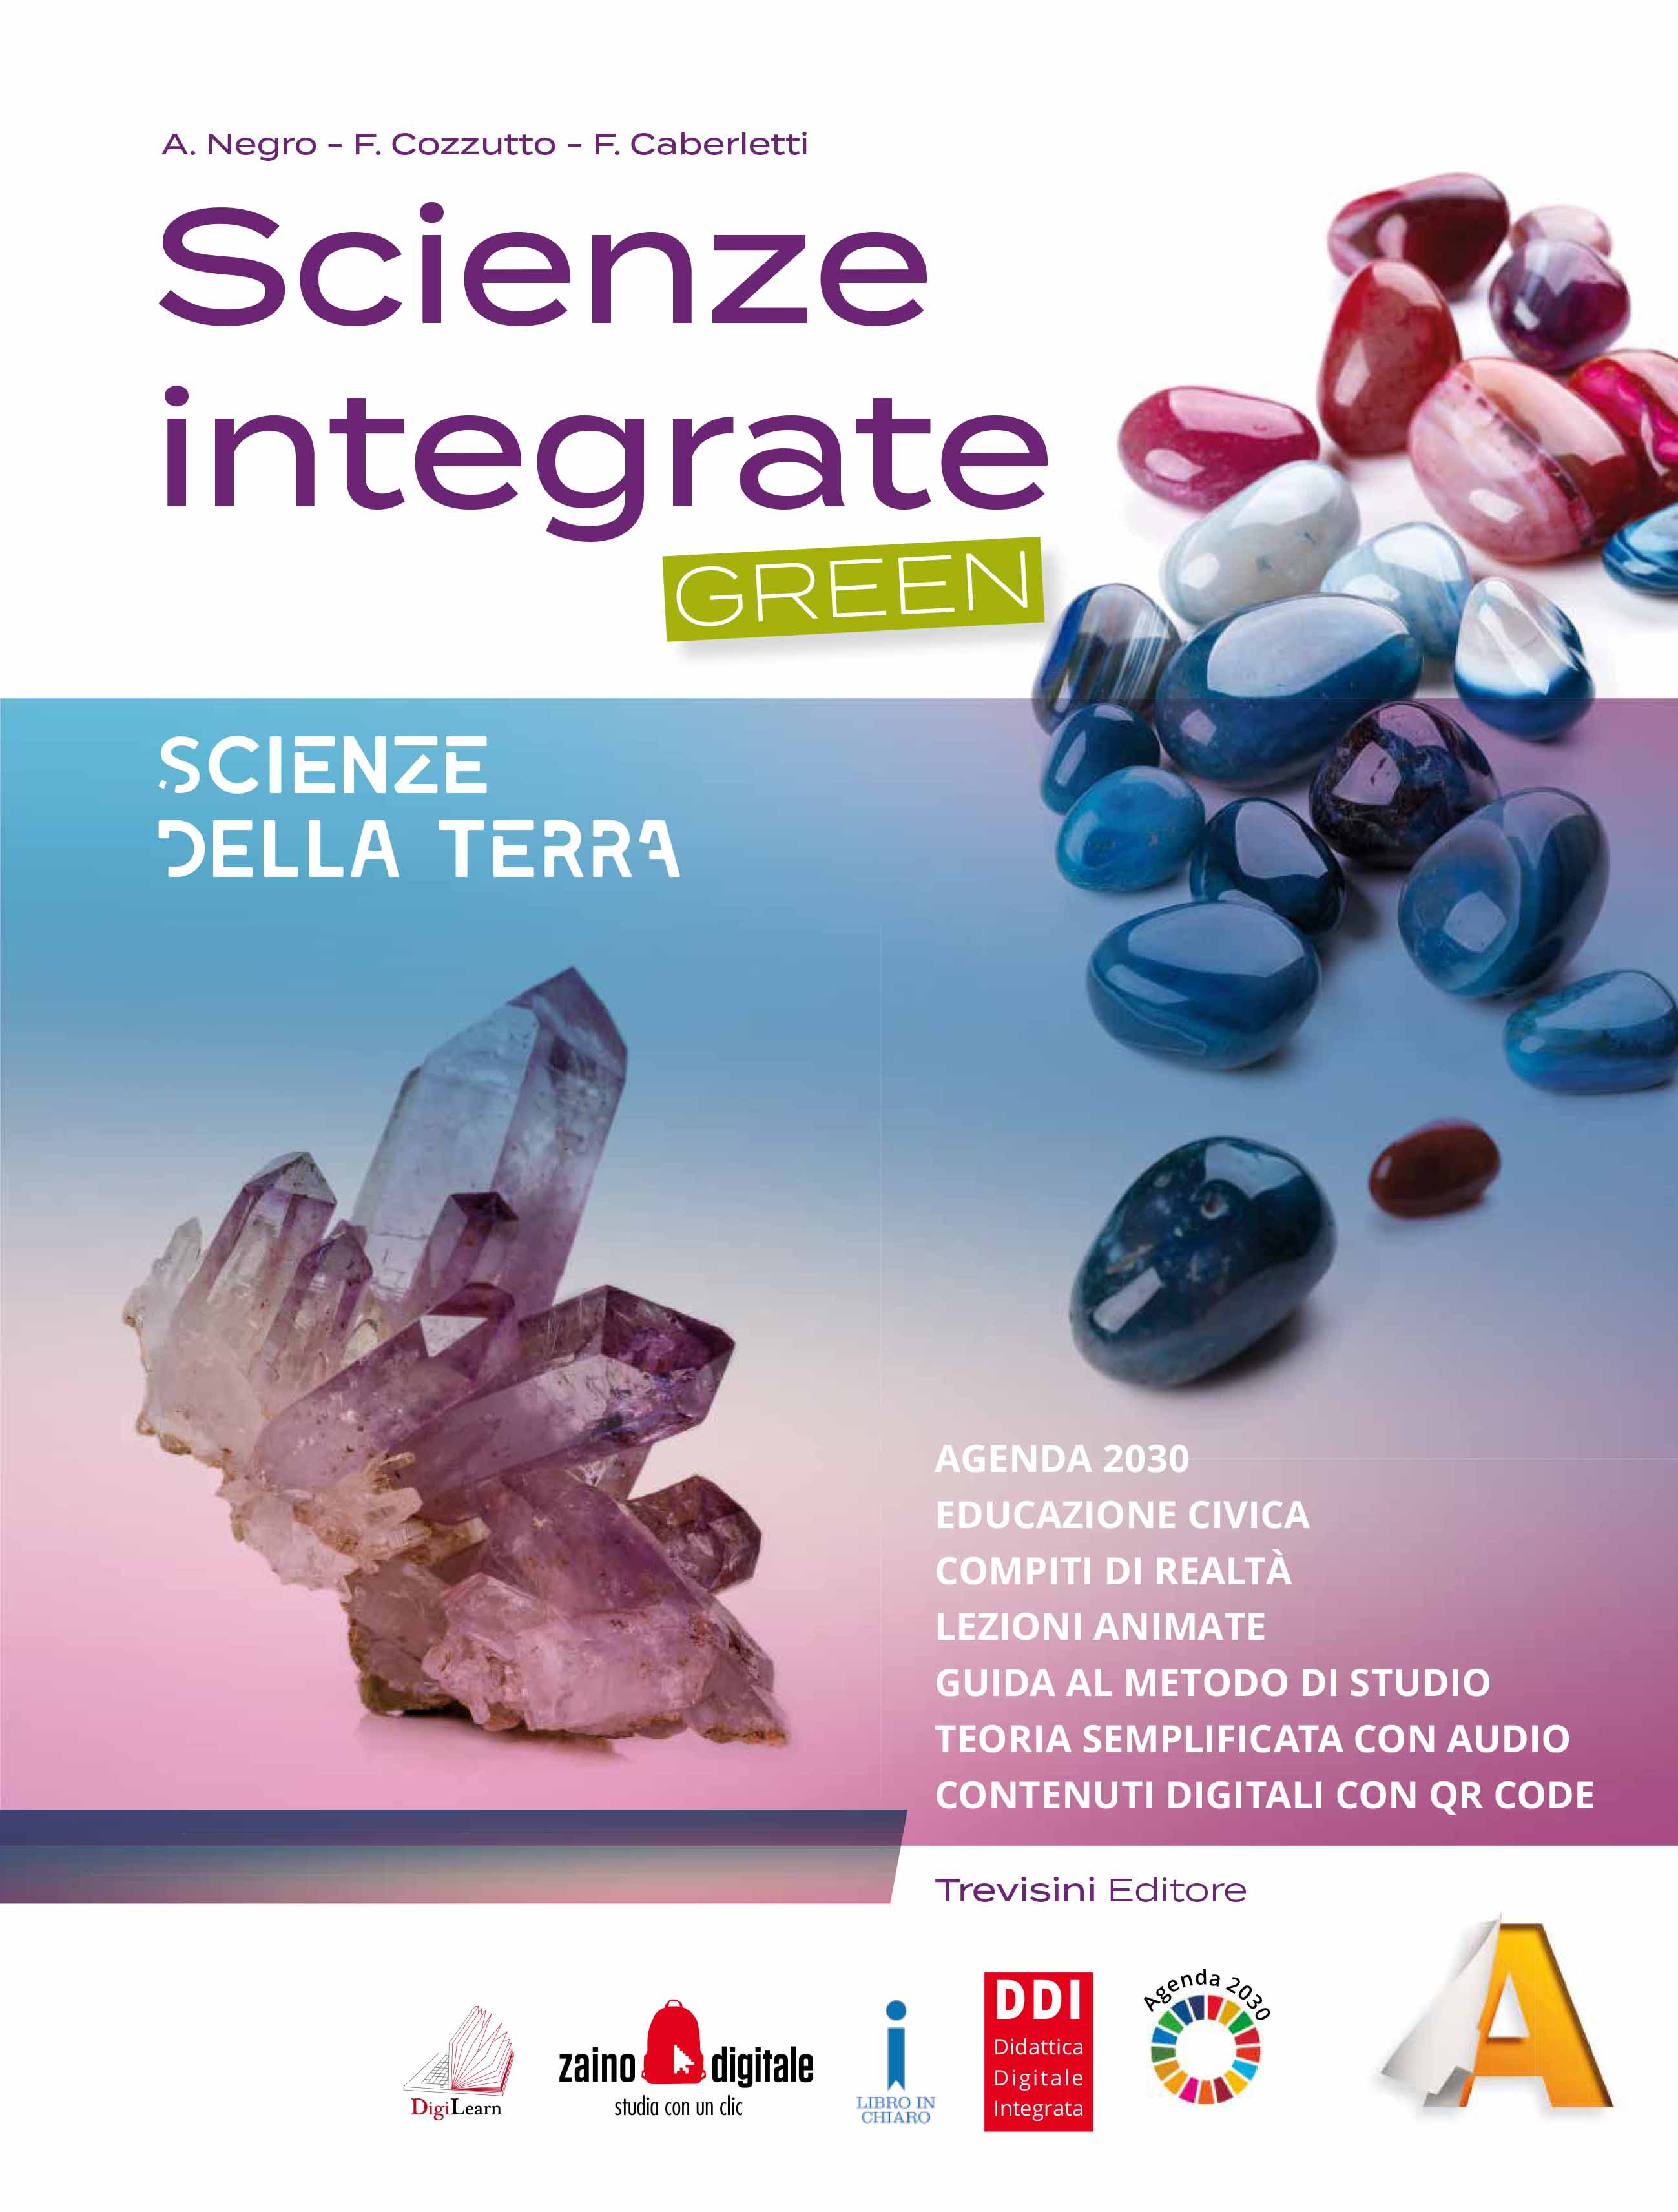 Scienze integrate - Green